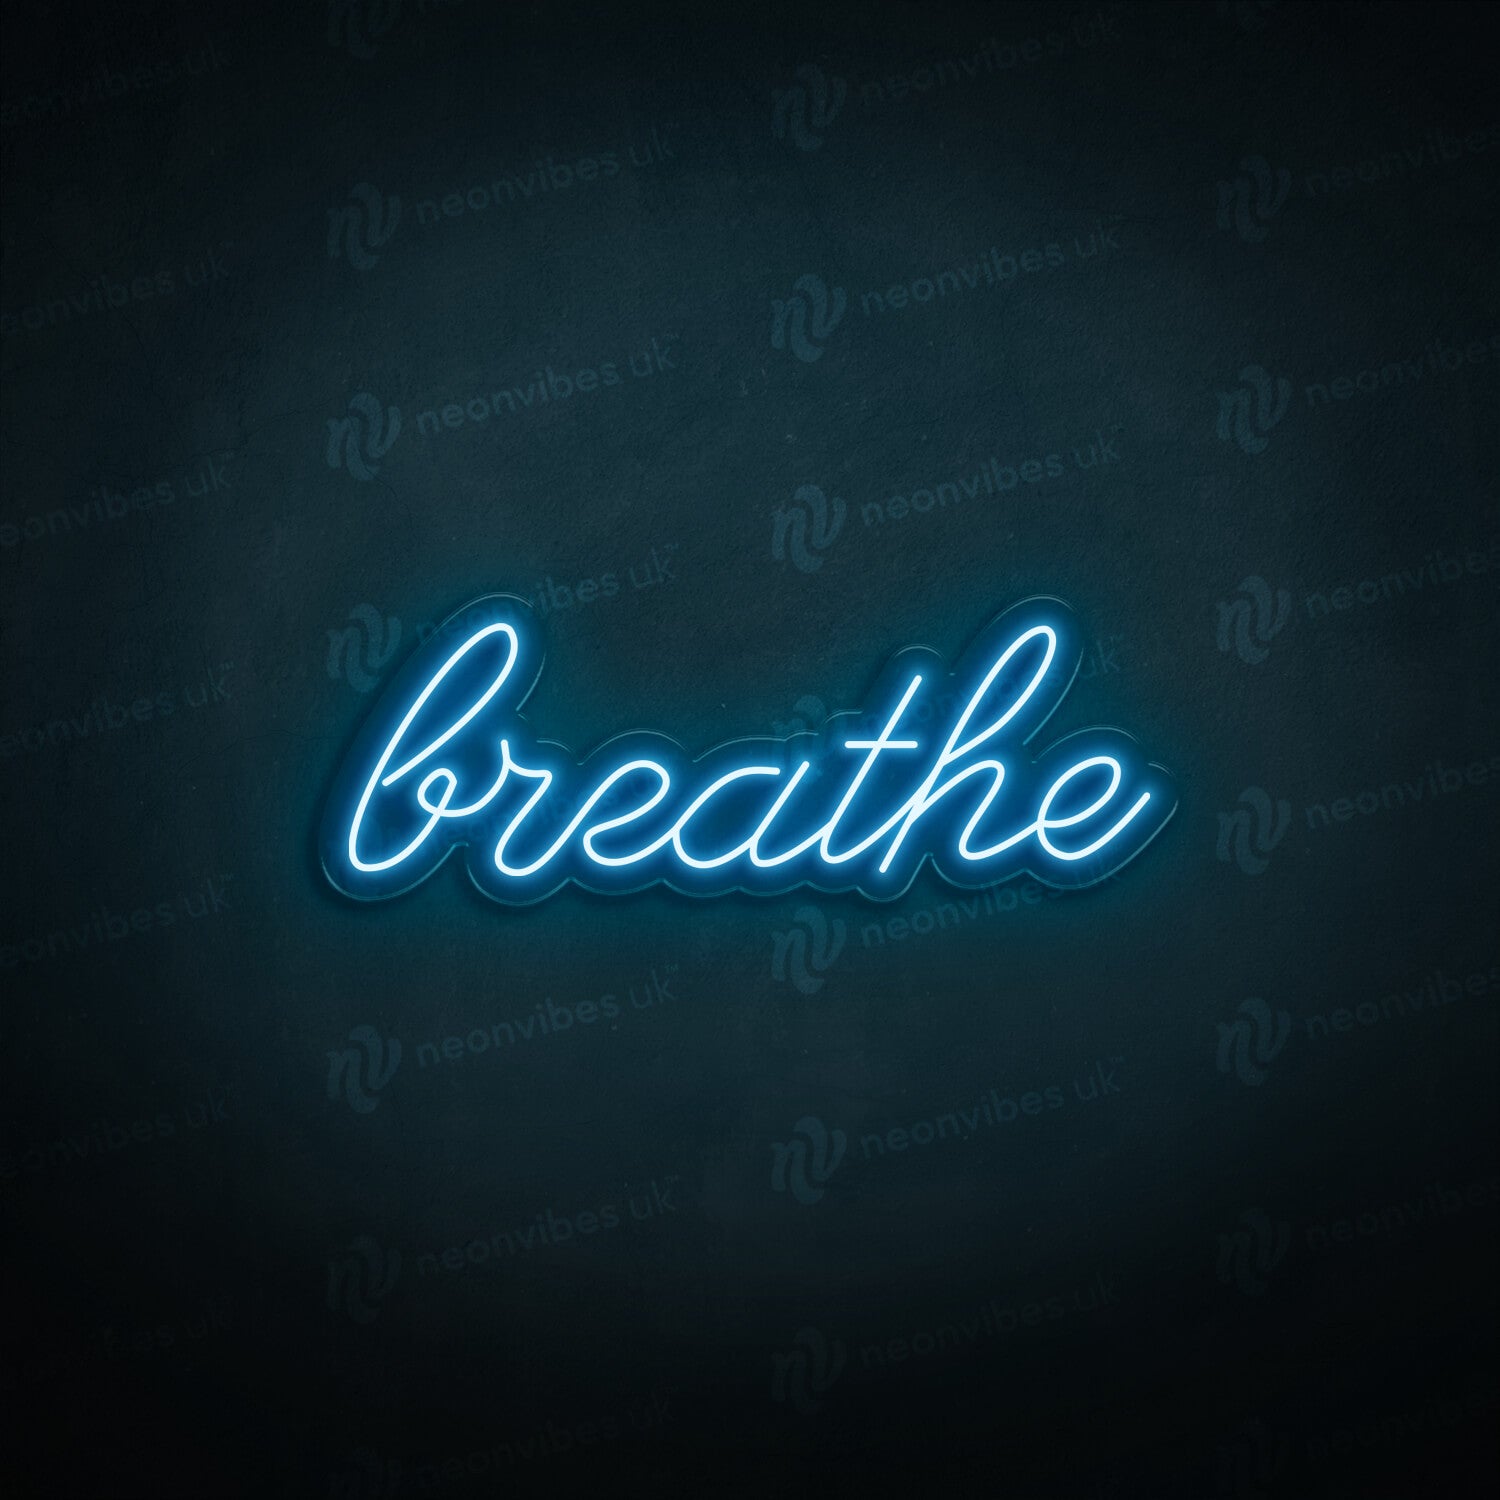 Breathe neon sign